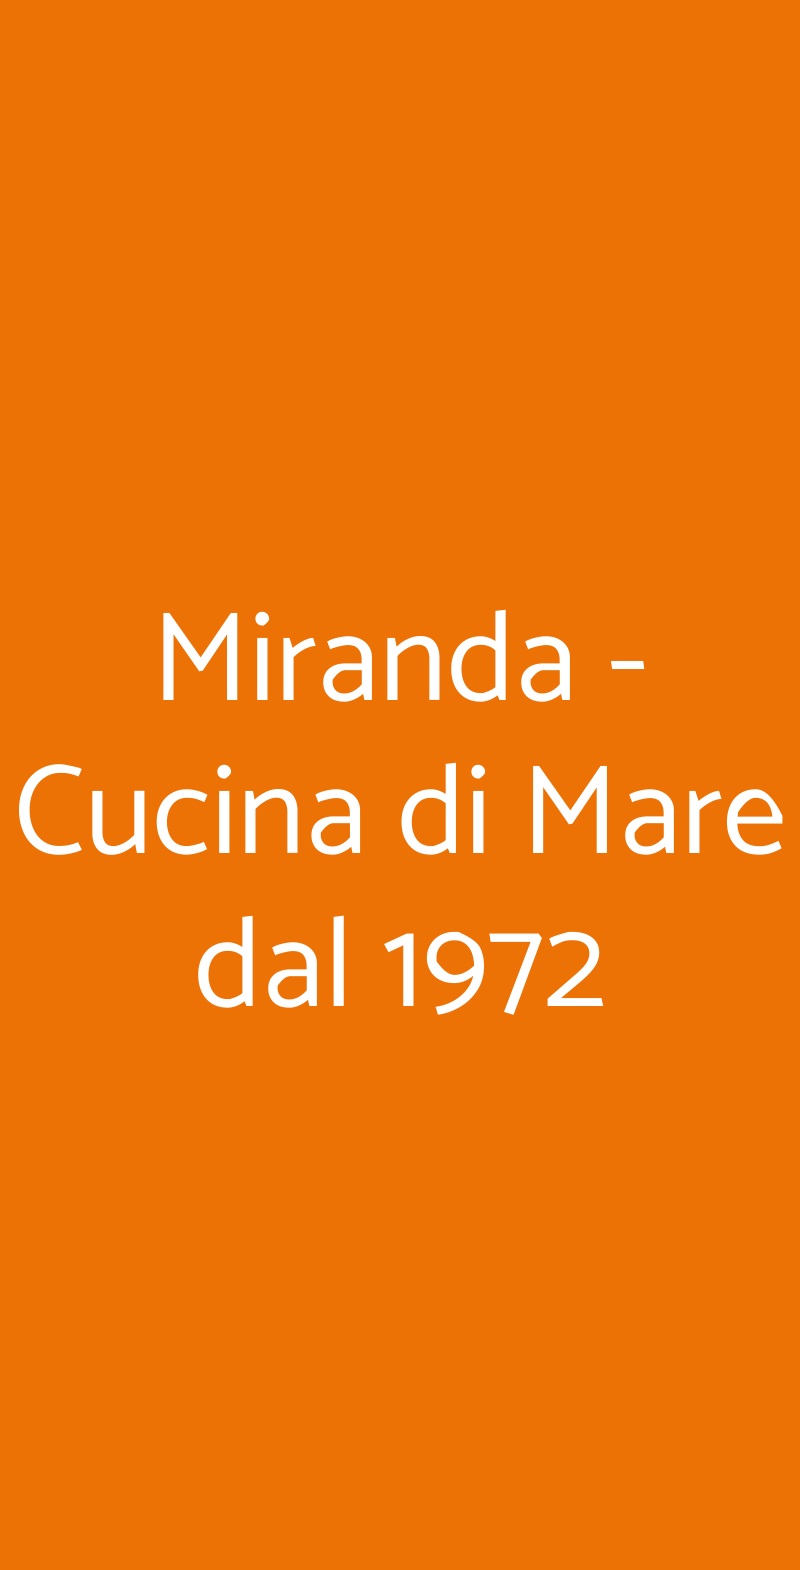 Miranda - Cucina di Mare dal 1972 Fiumicino menù 1 pagina